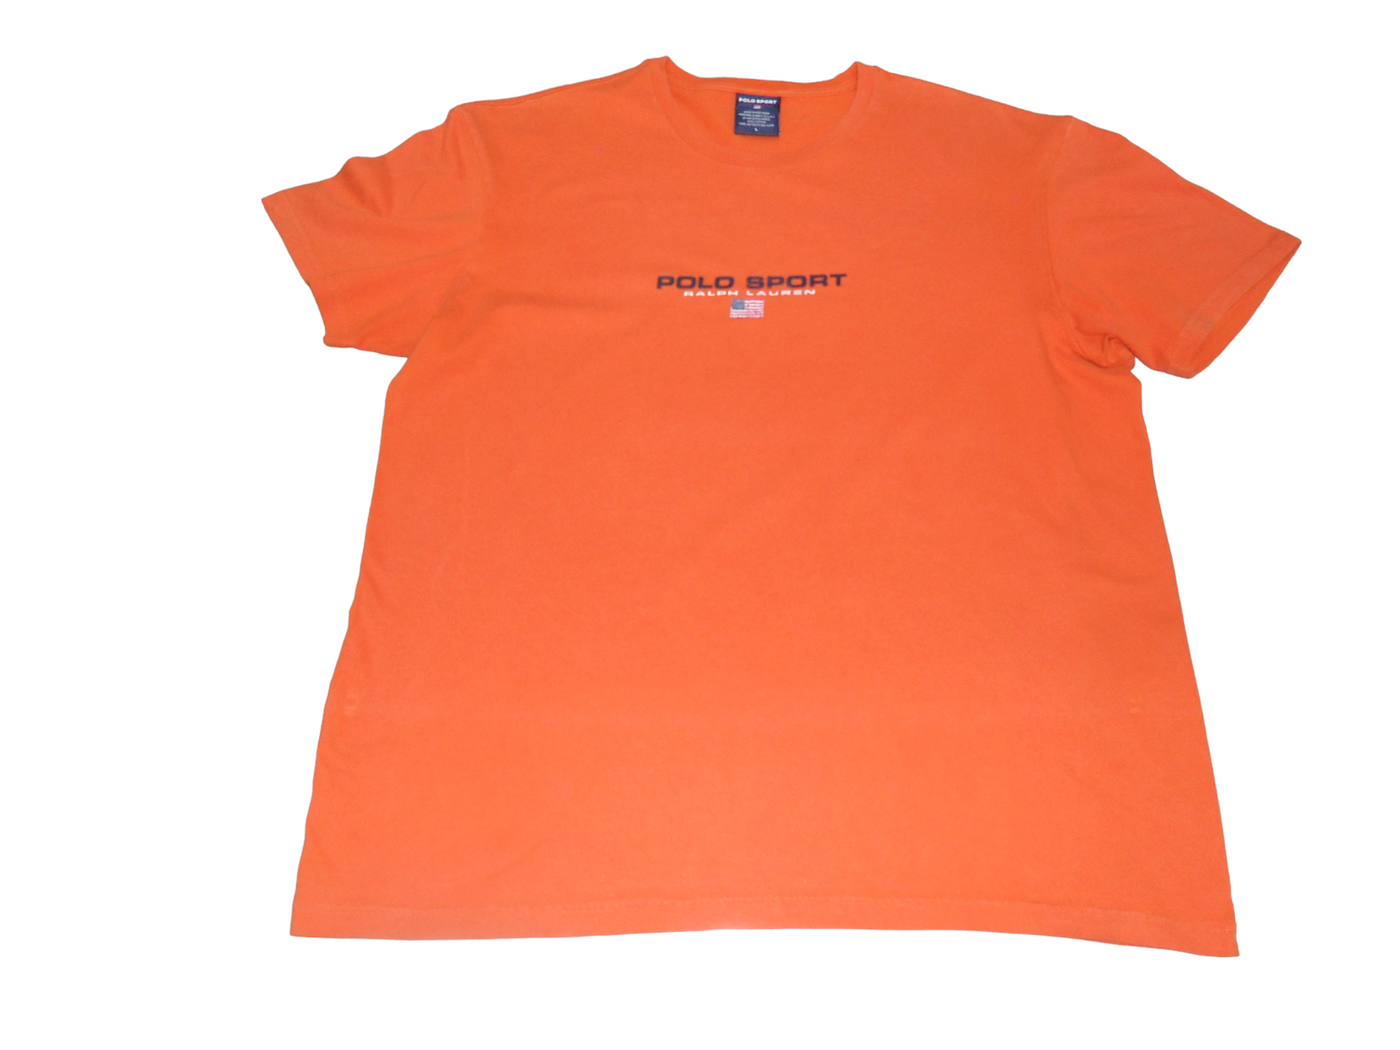 Vintage Polo Sport Orange Cotton Men's T-Shirt Size - L